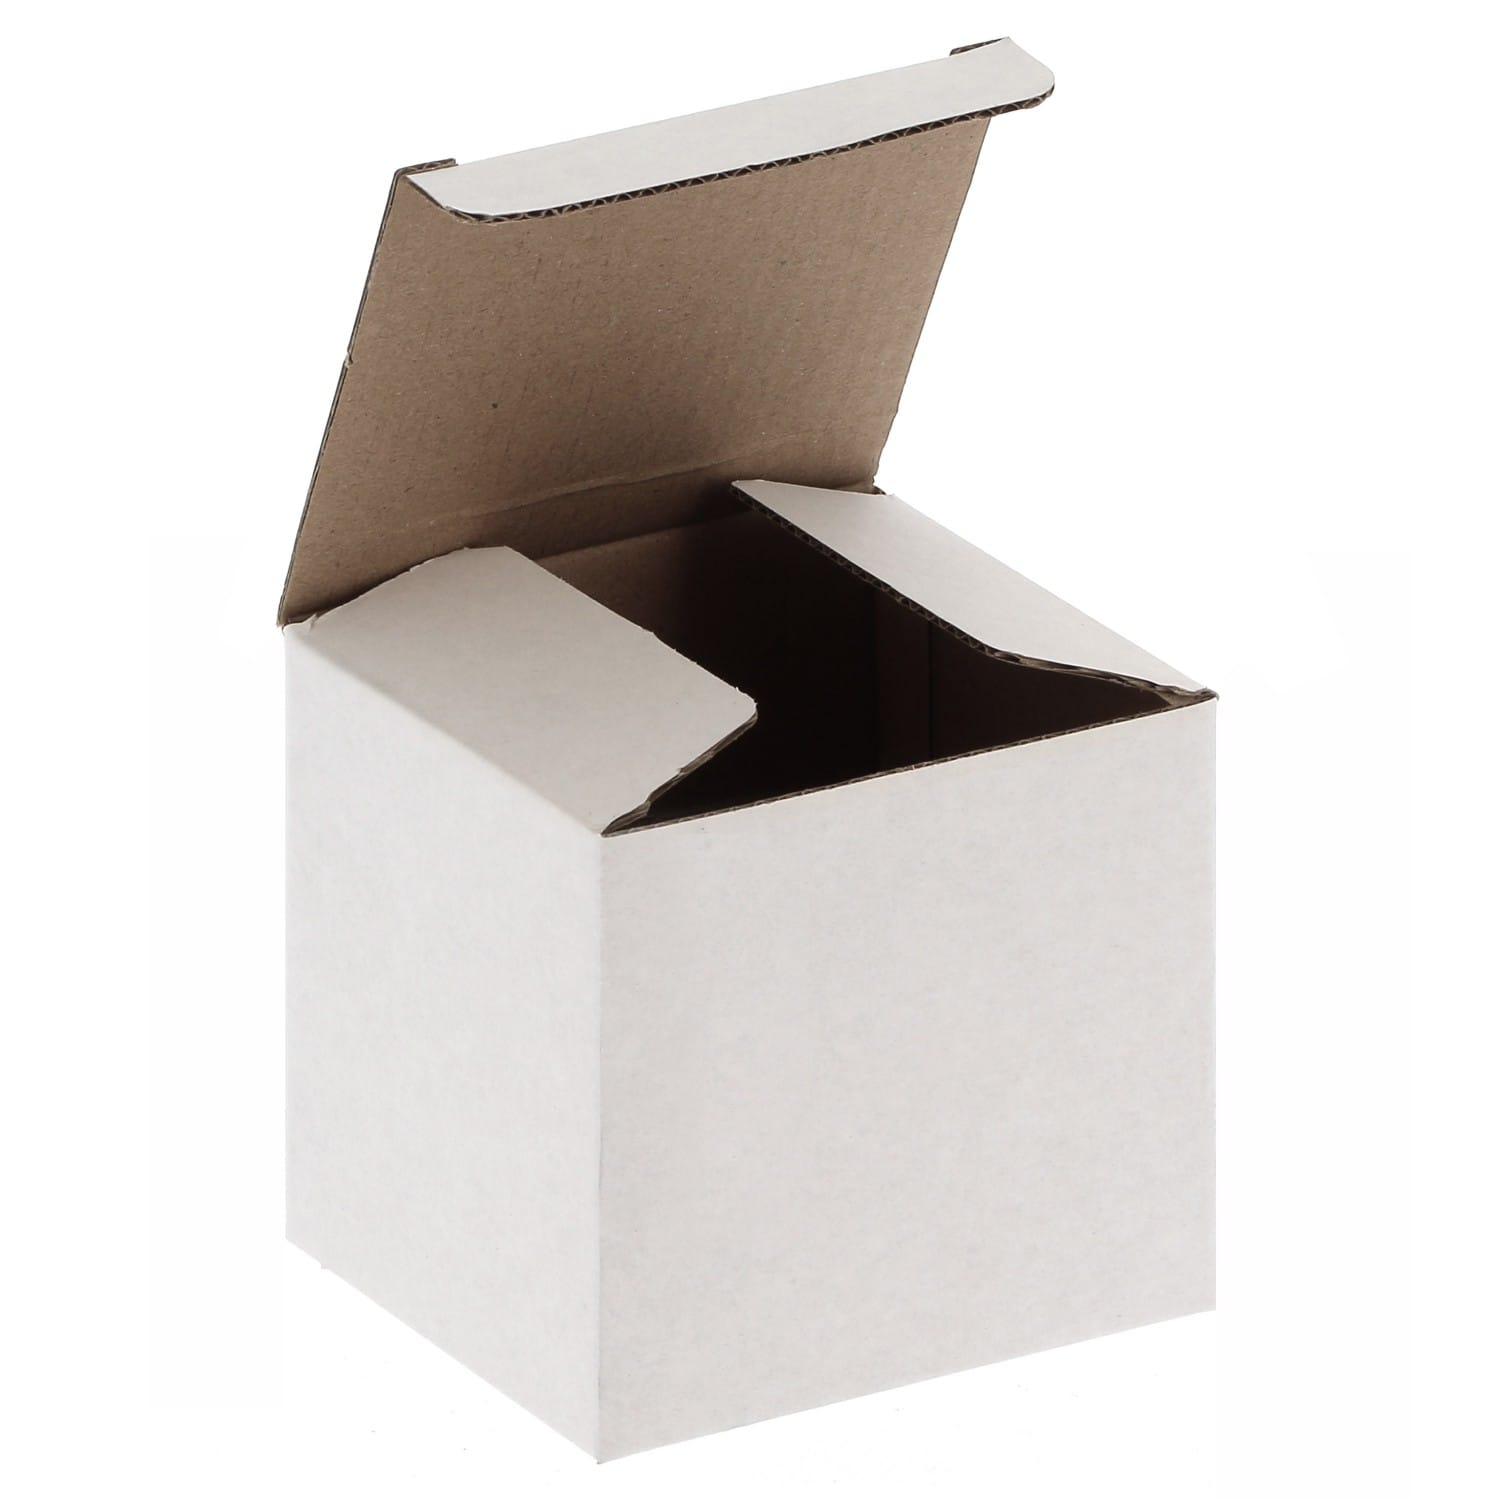 Emballage - Boîte blanche carton pour Mug 330ml (11oz), boule à neige,  boule de Noël, et pour livraison en magasin